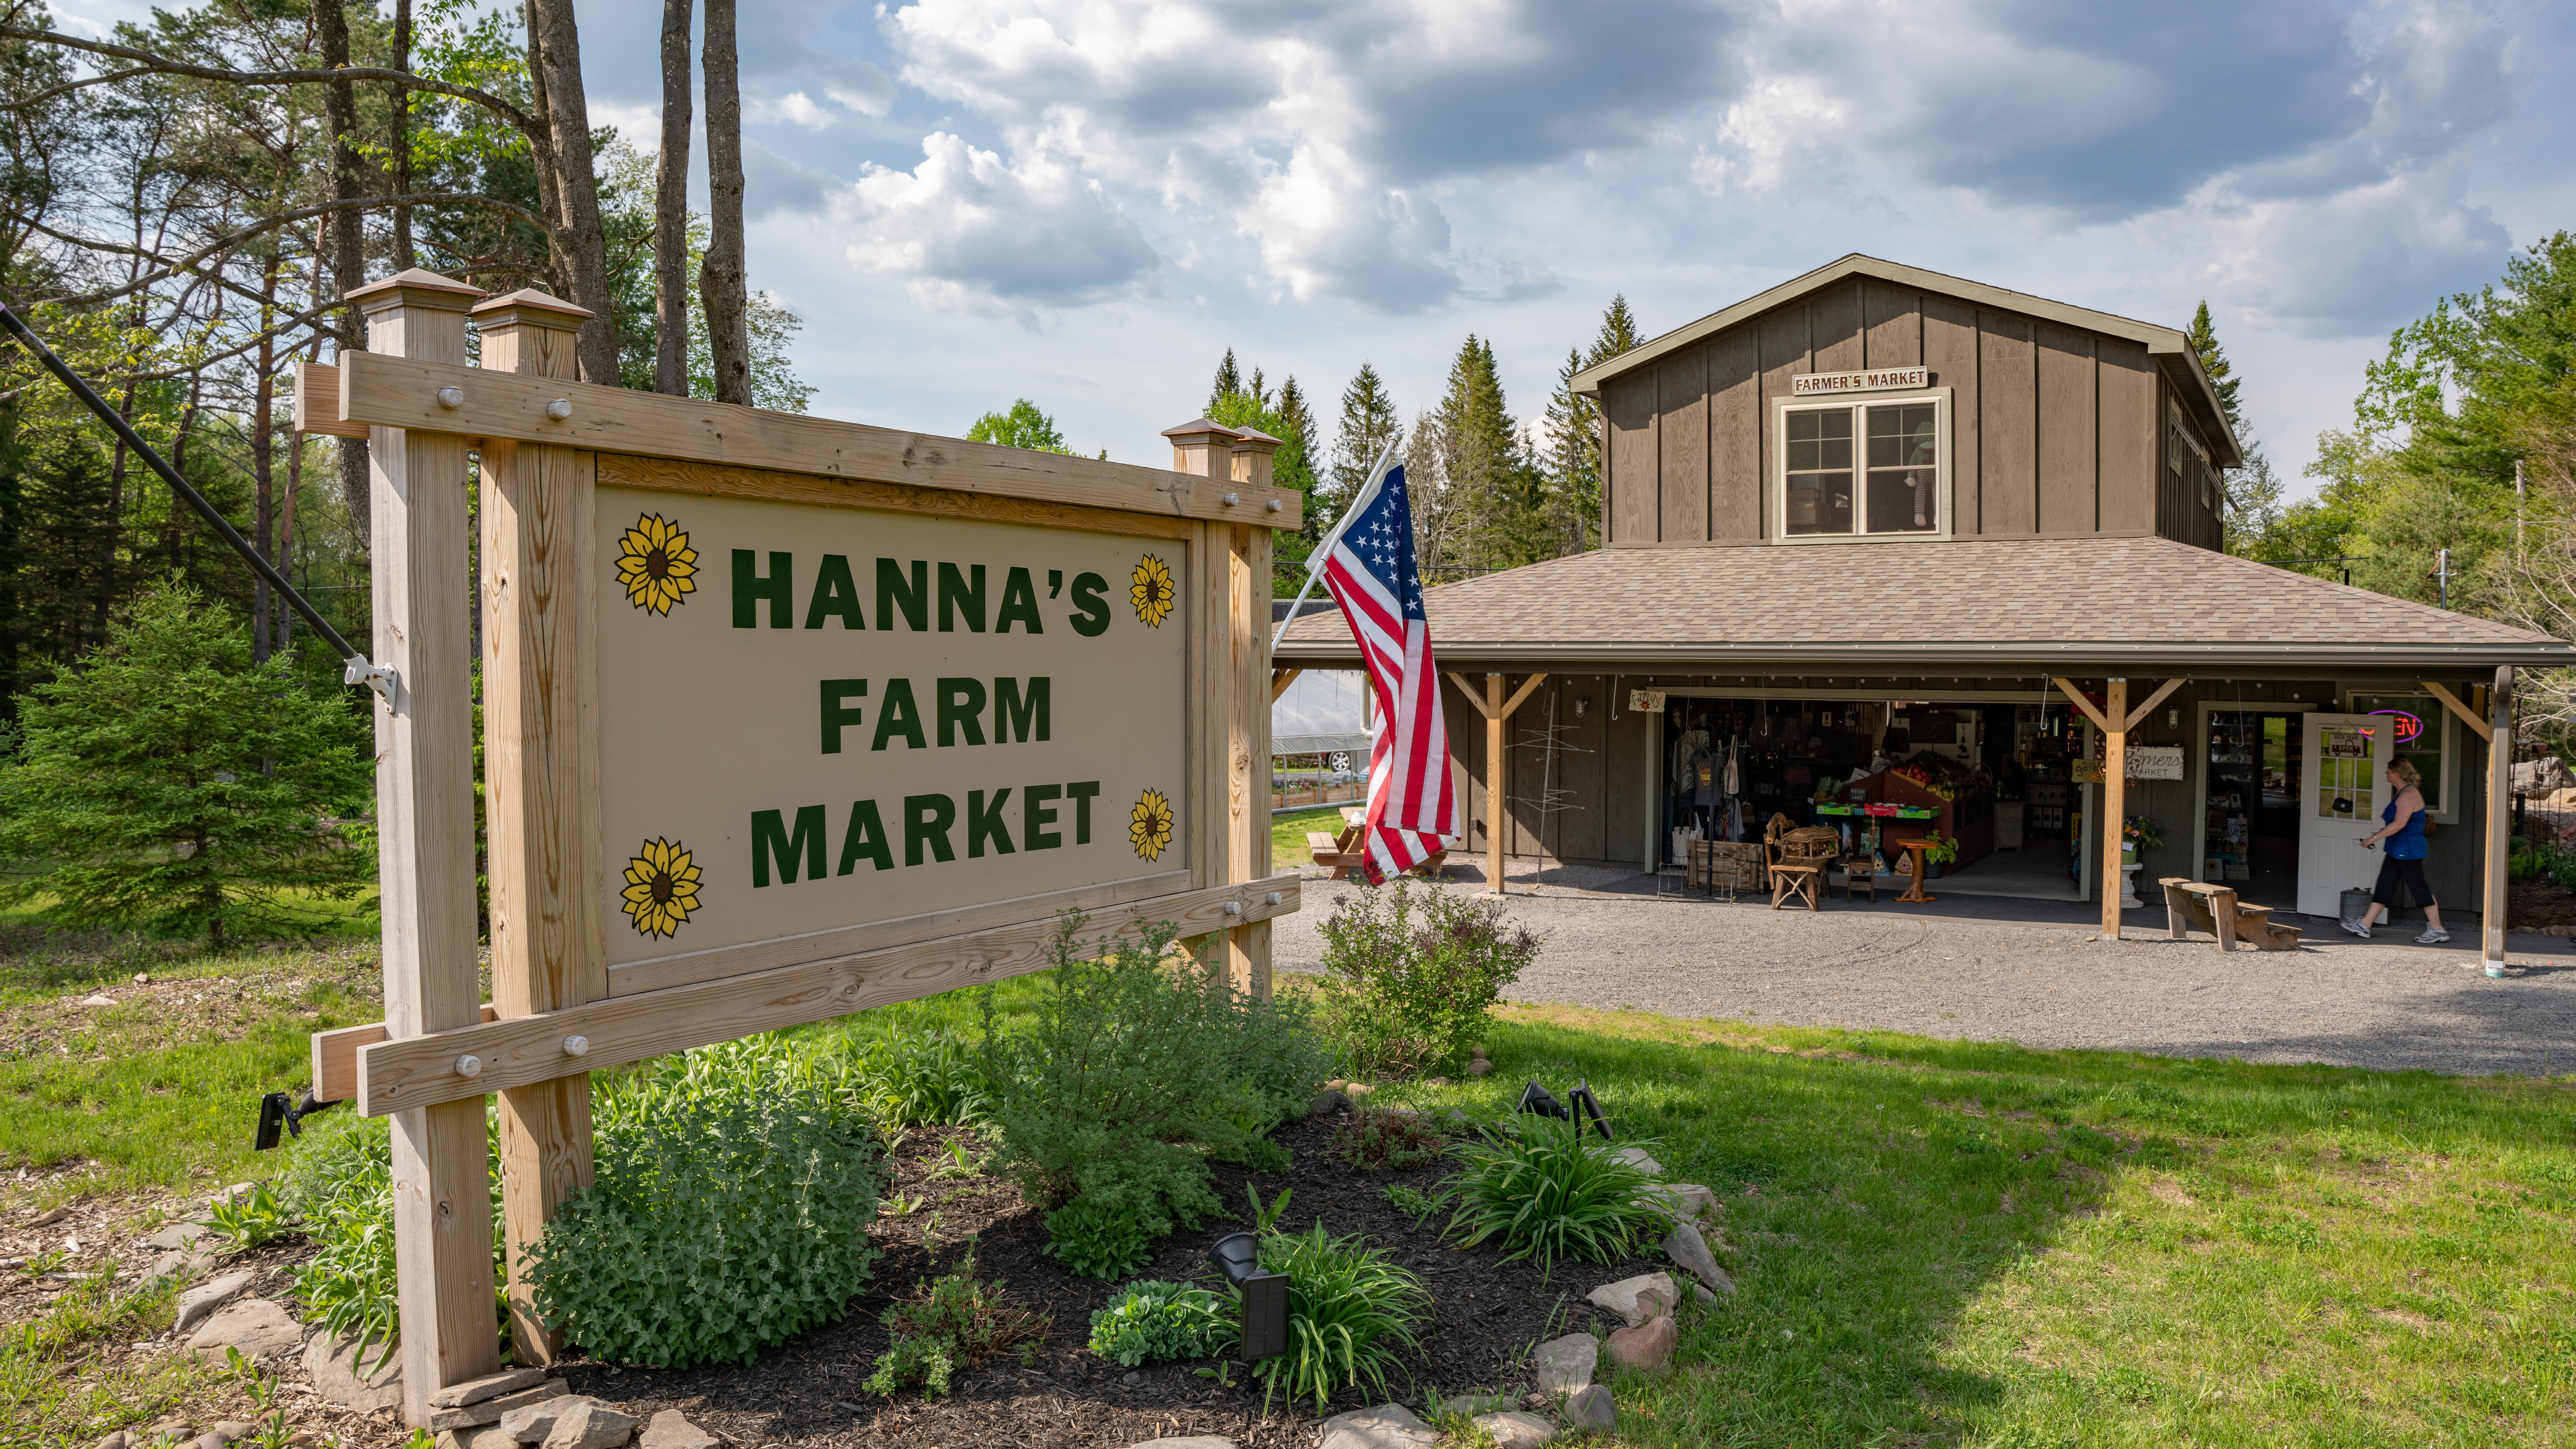 Hannas Farm Market Pocono Lake, PA 18347